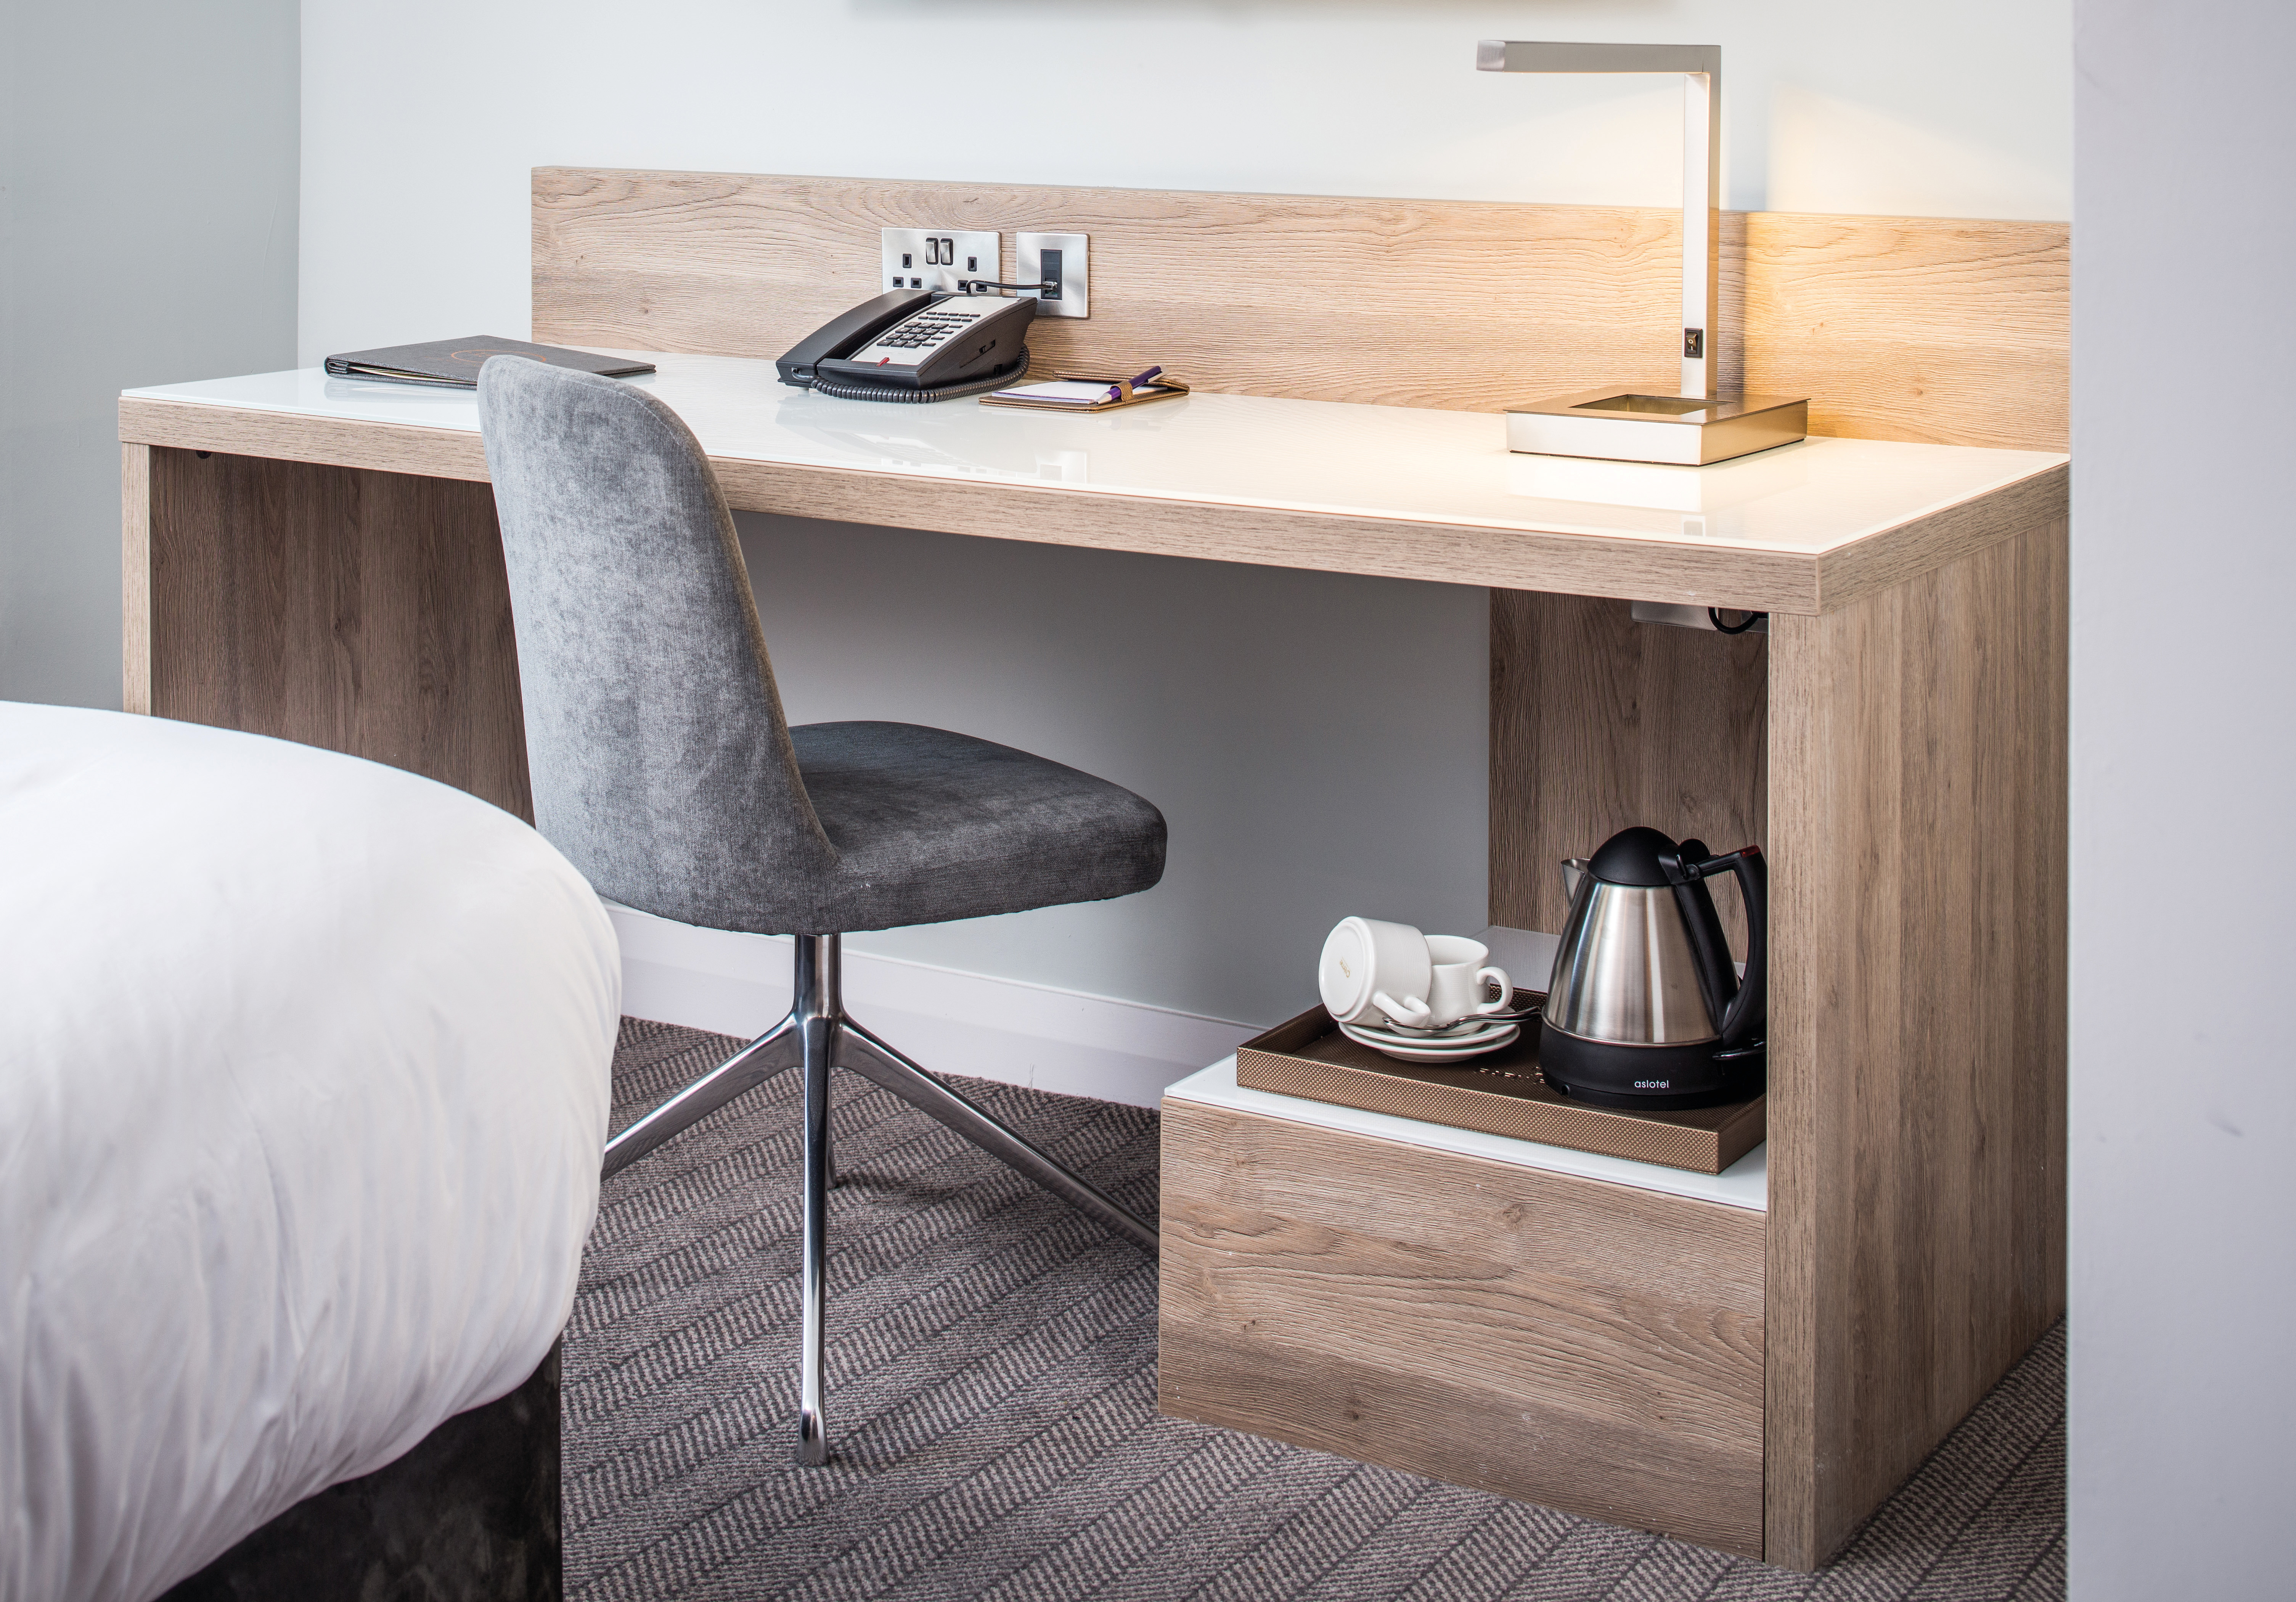 Os projetos atraentes que mostram as últimas tendências no design de mobiliário de hospitalidade foram escolhidos.